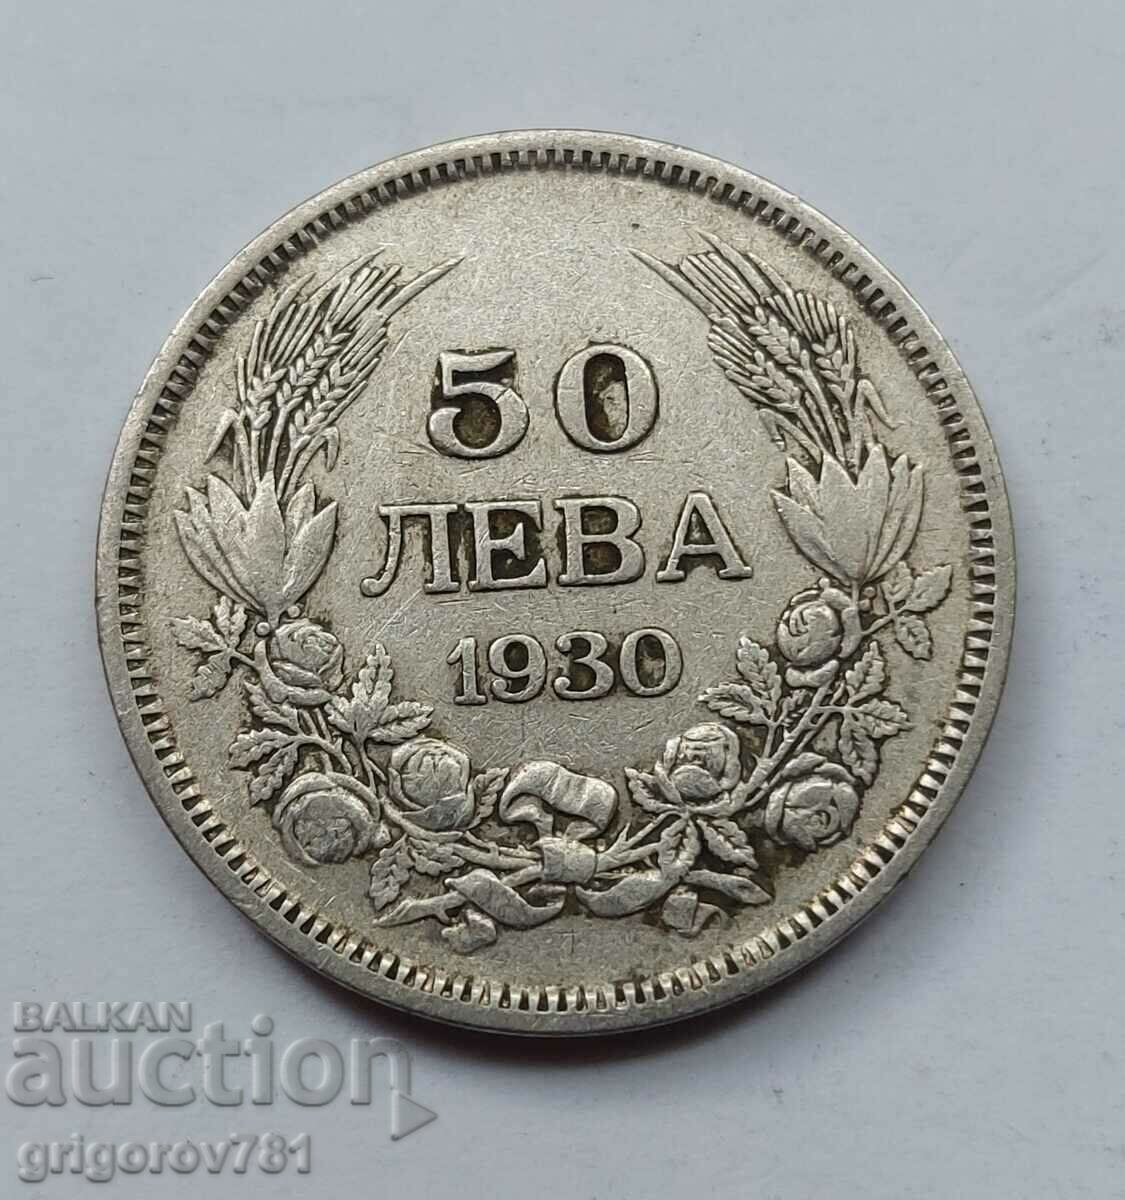 Ασήμι 50 λέβα Βουλγαρία 1930 - ασημένιο νόμισμα #70